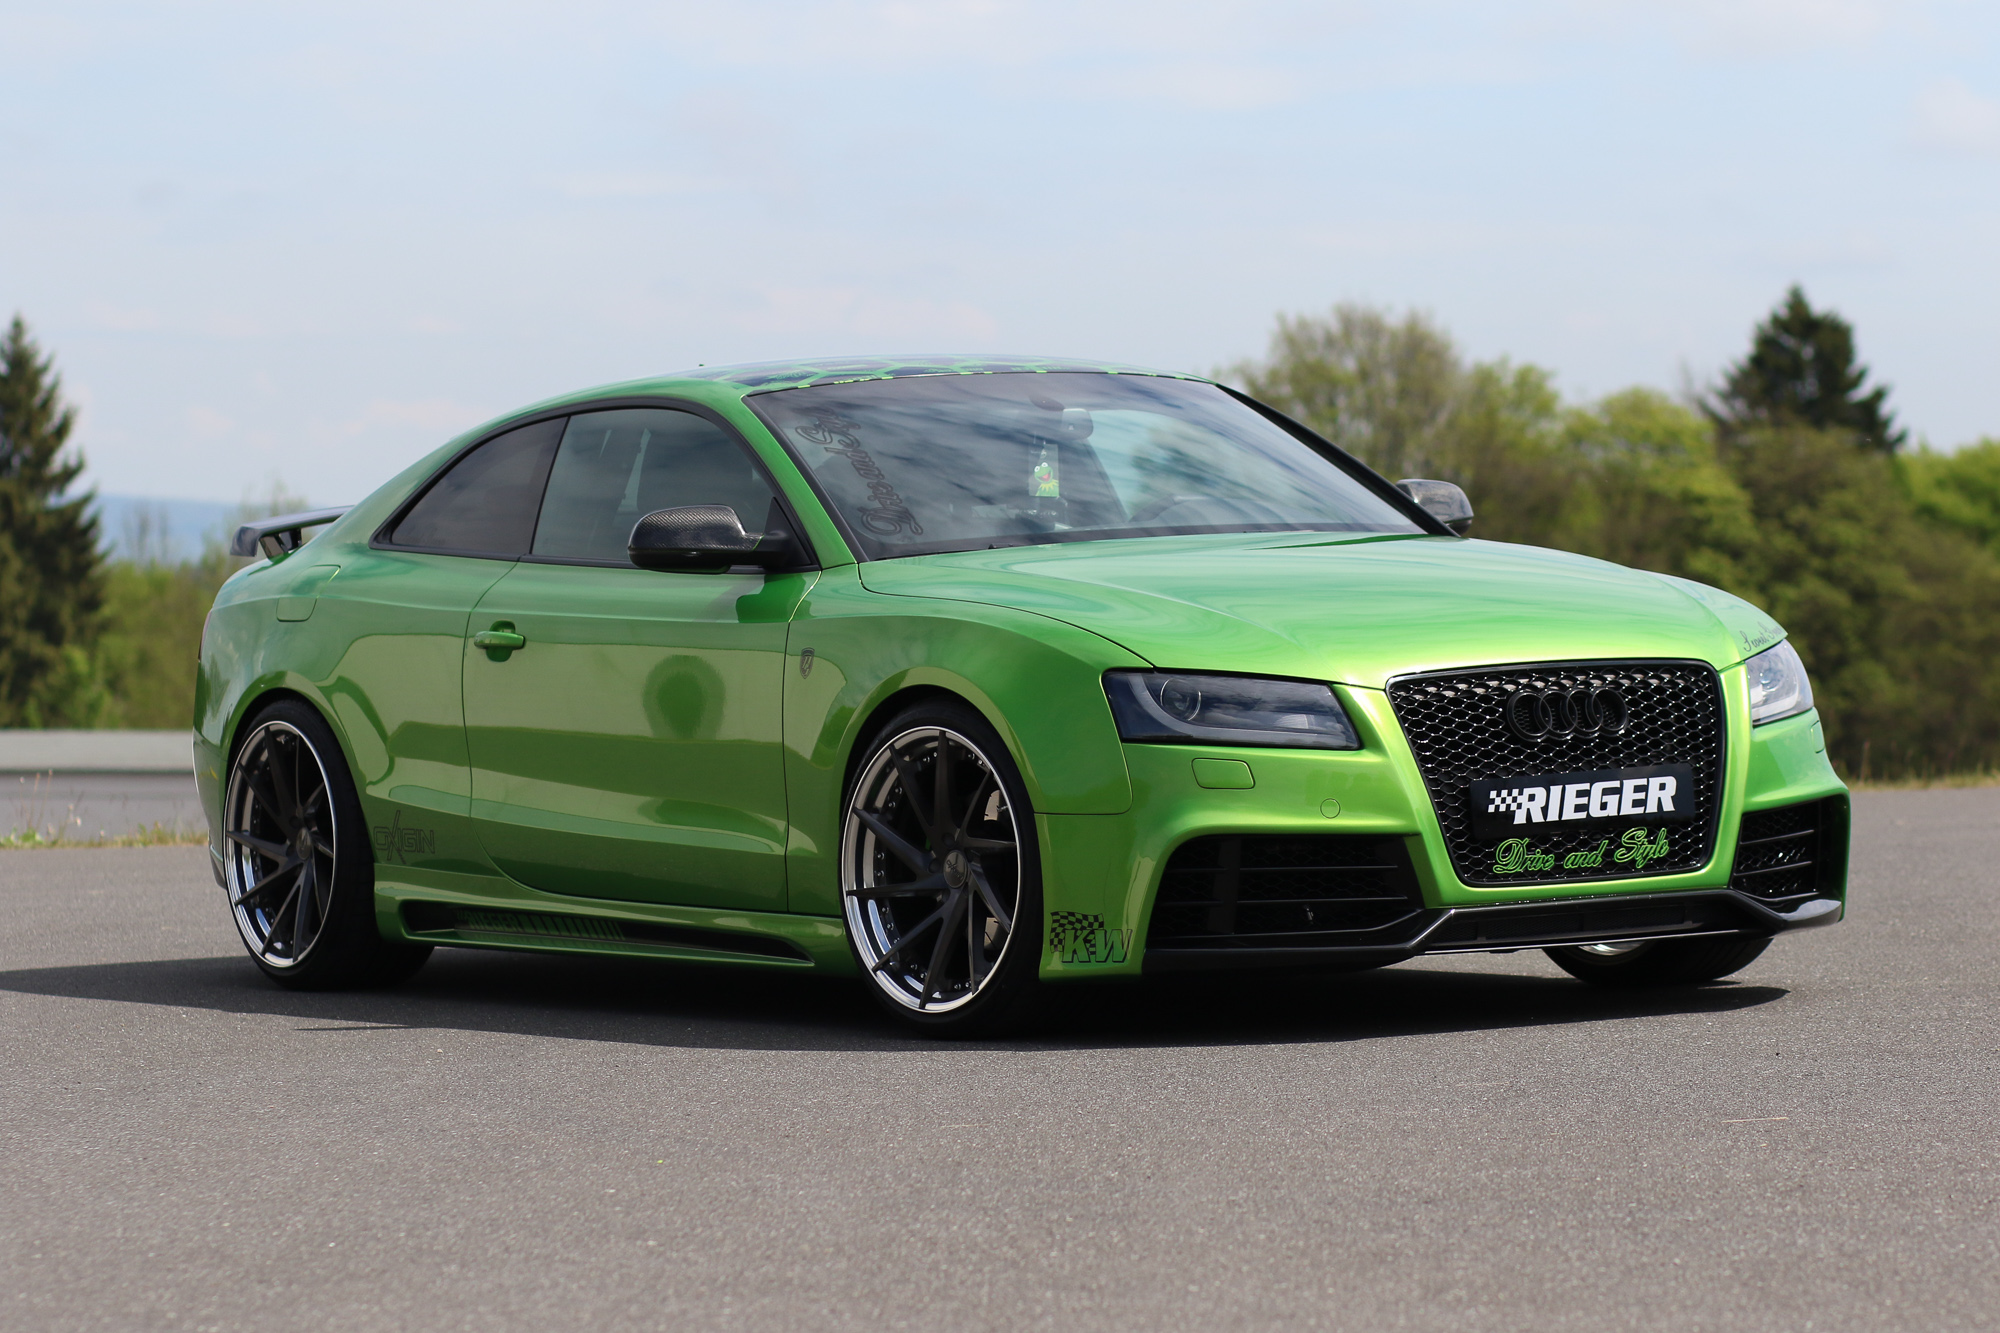 https://ausfahrt.tv/wp-content/uploads/2017/05/Audi-A5-Coupe-Tuning-Sweet-Green-AusfahrtTV-Tuning-Jens-Stratmann-1.jpg